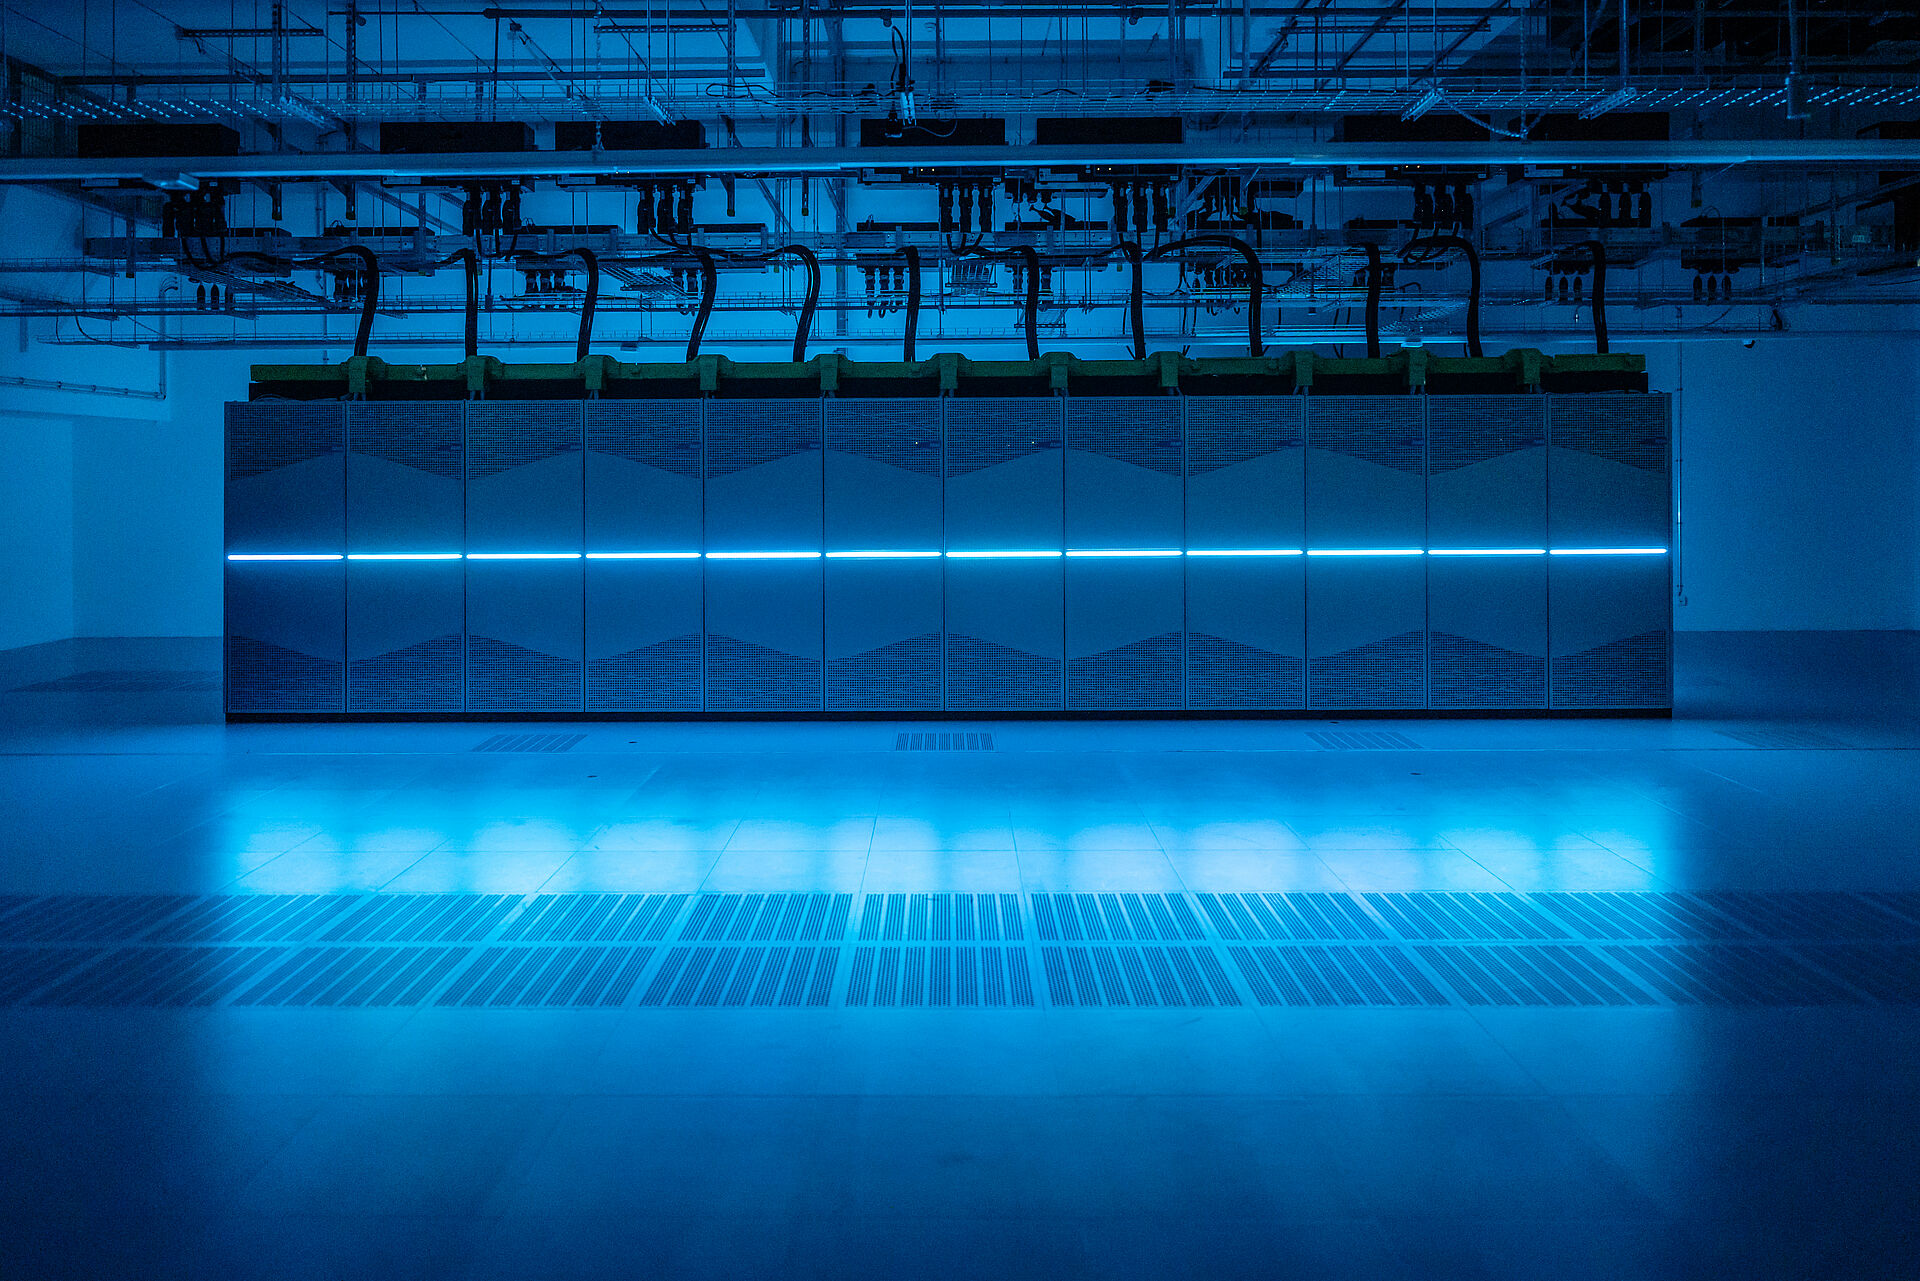 Der Supercomputer Noctua 2 des PC2 im Gebäude X, die mittig angebrachte LED-Linienbeleuchtung der einzelnen Serverschränke taucht den Raum in blaues Licht.